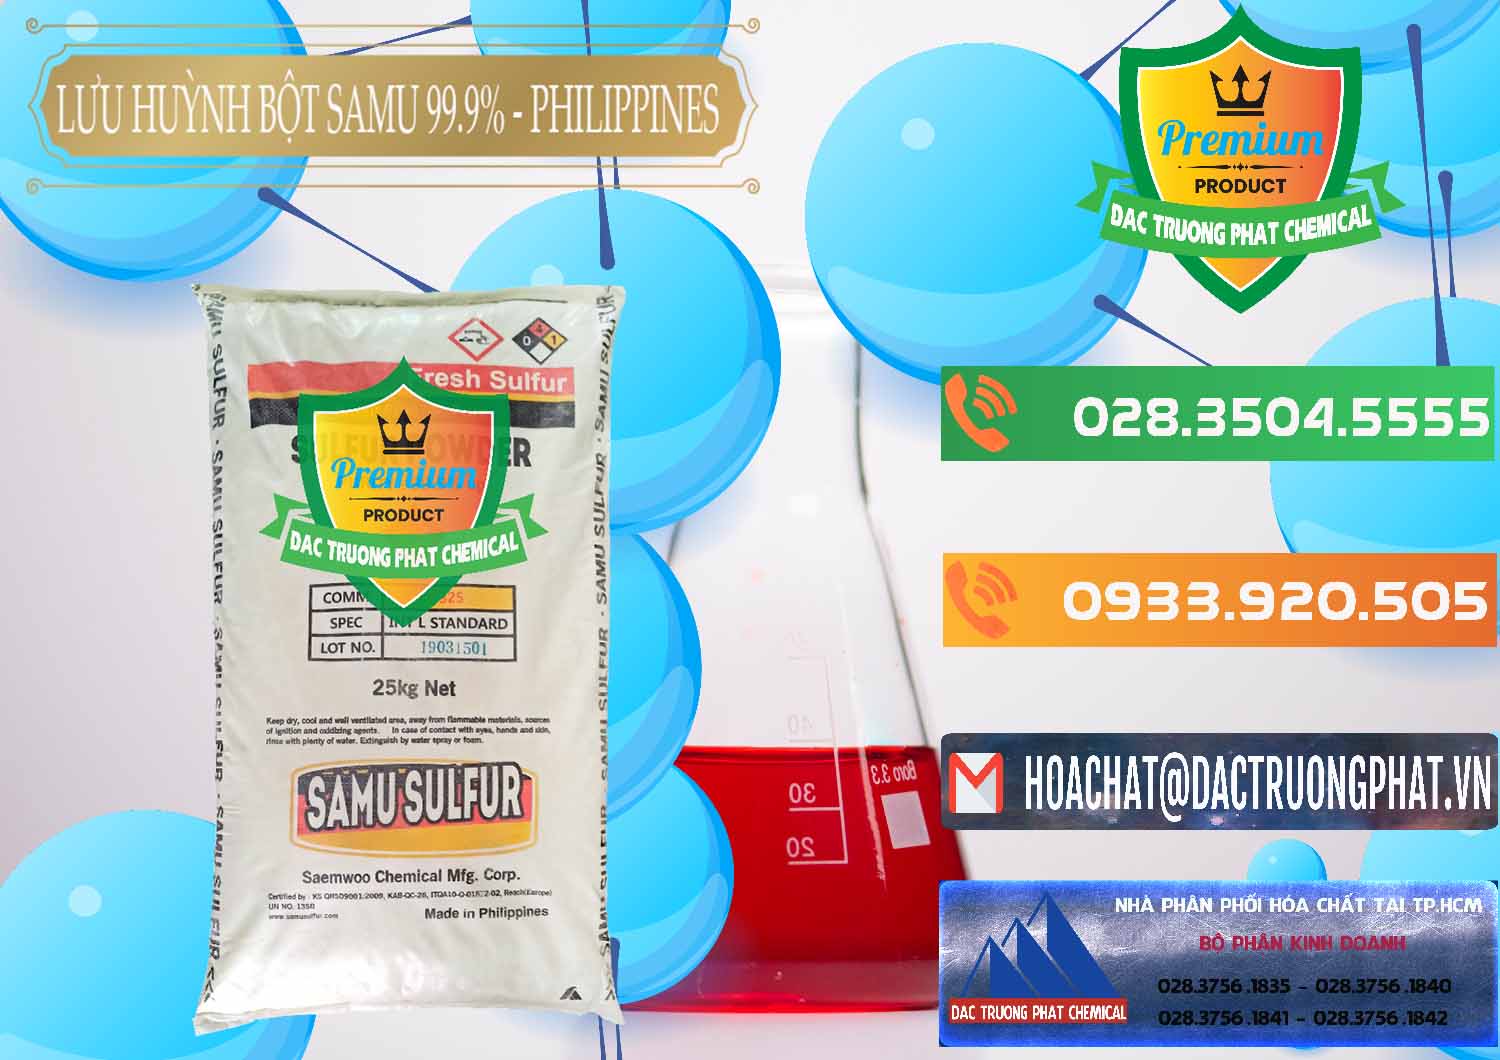 Chuyên bán & cung cấp Lưu huỳnh Bột - Sulfur Powder Samu Philippines - 0201 - Chuyên cung cấp - phân phối hóa chất tại TP.HCM - hoachatxulynuoc.com.vn